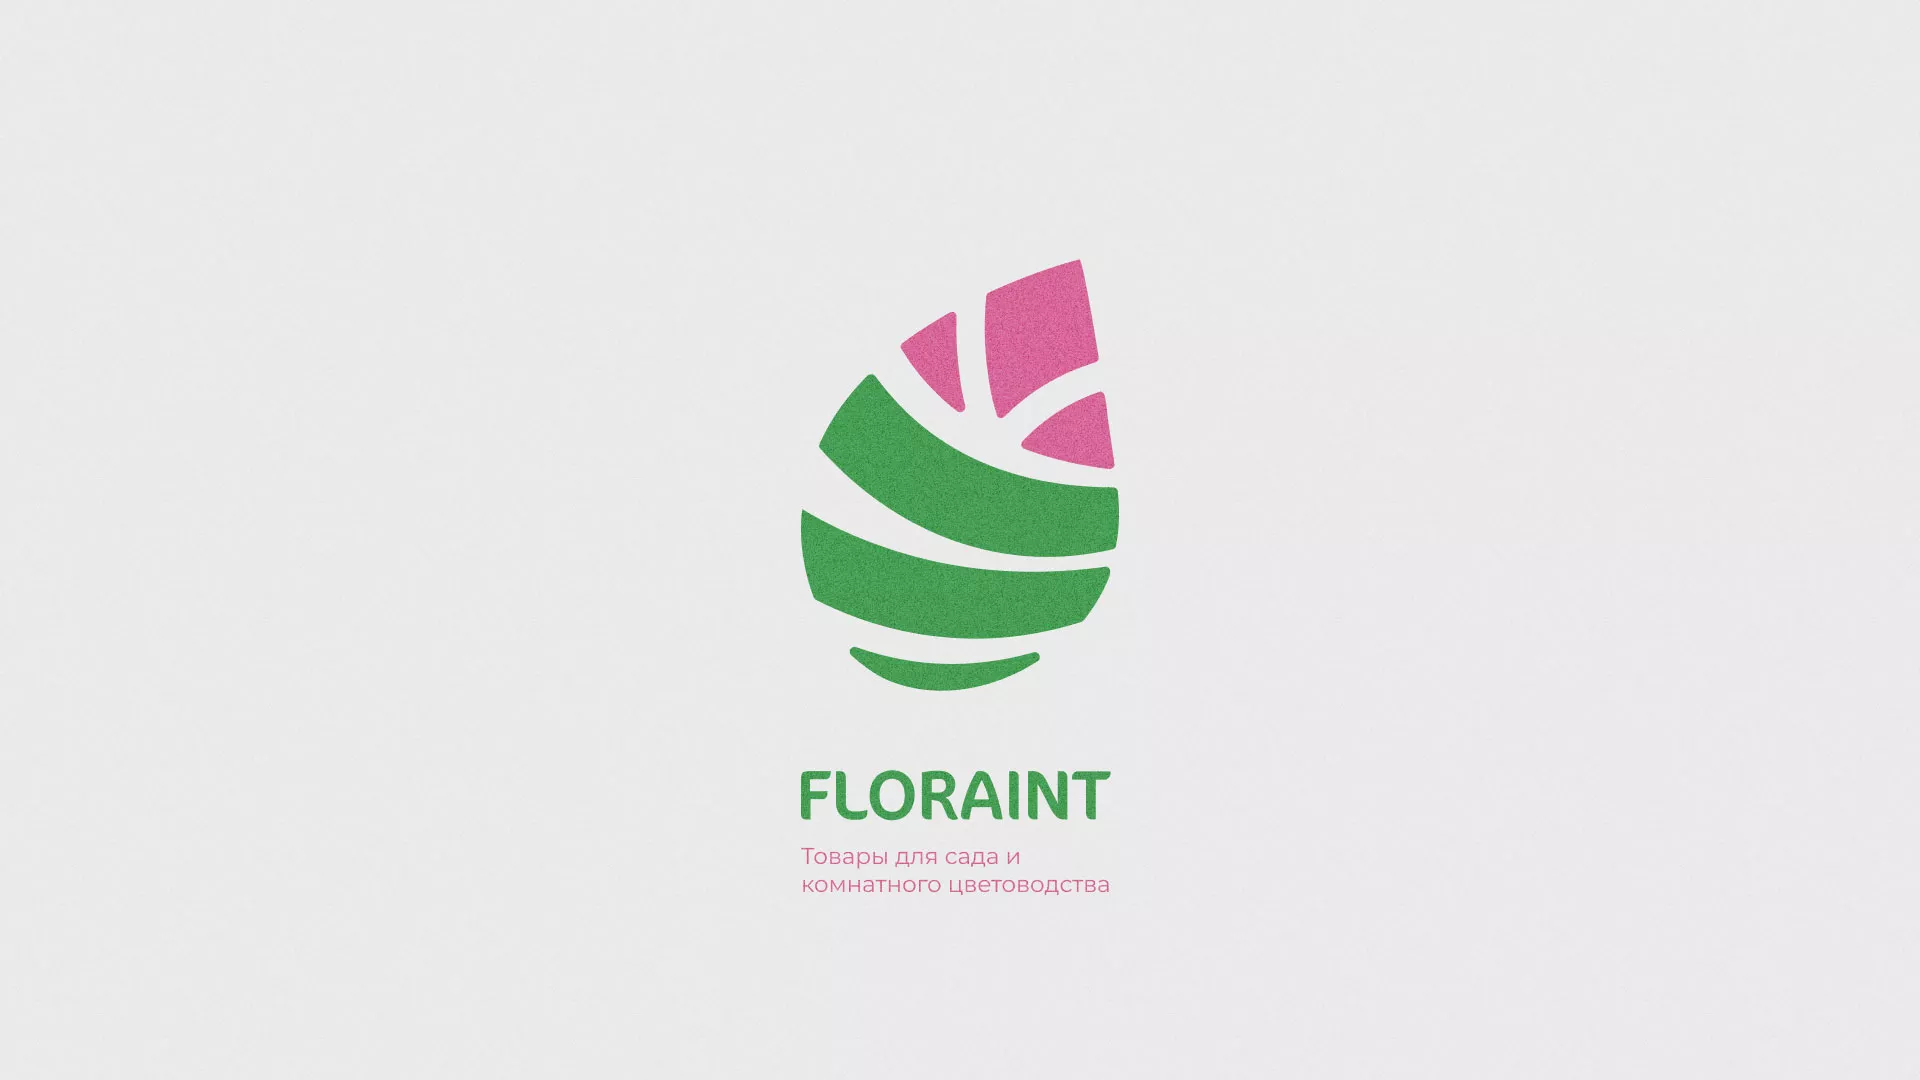 Разработка оформления профиля Instagram для магазина «Floraint» в Пласте